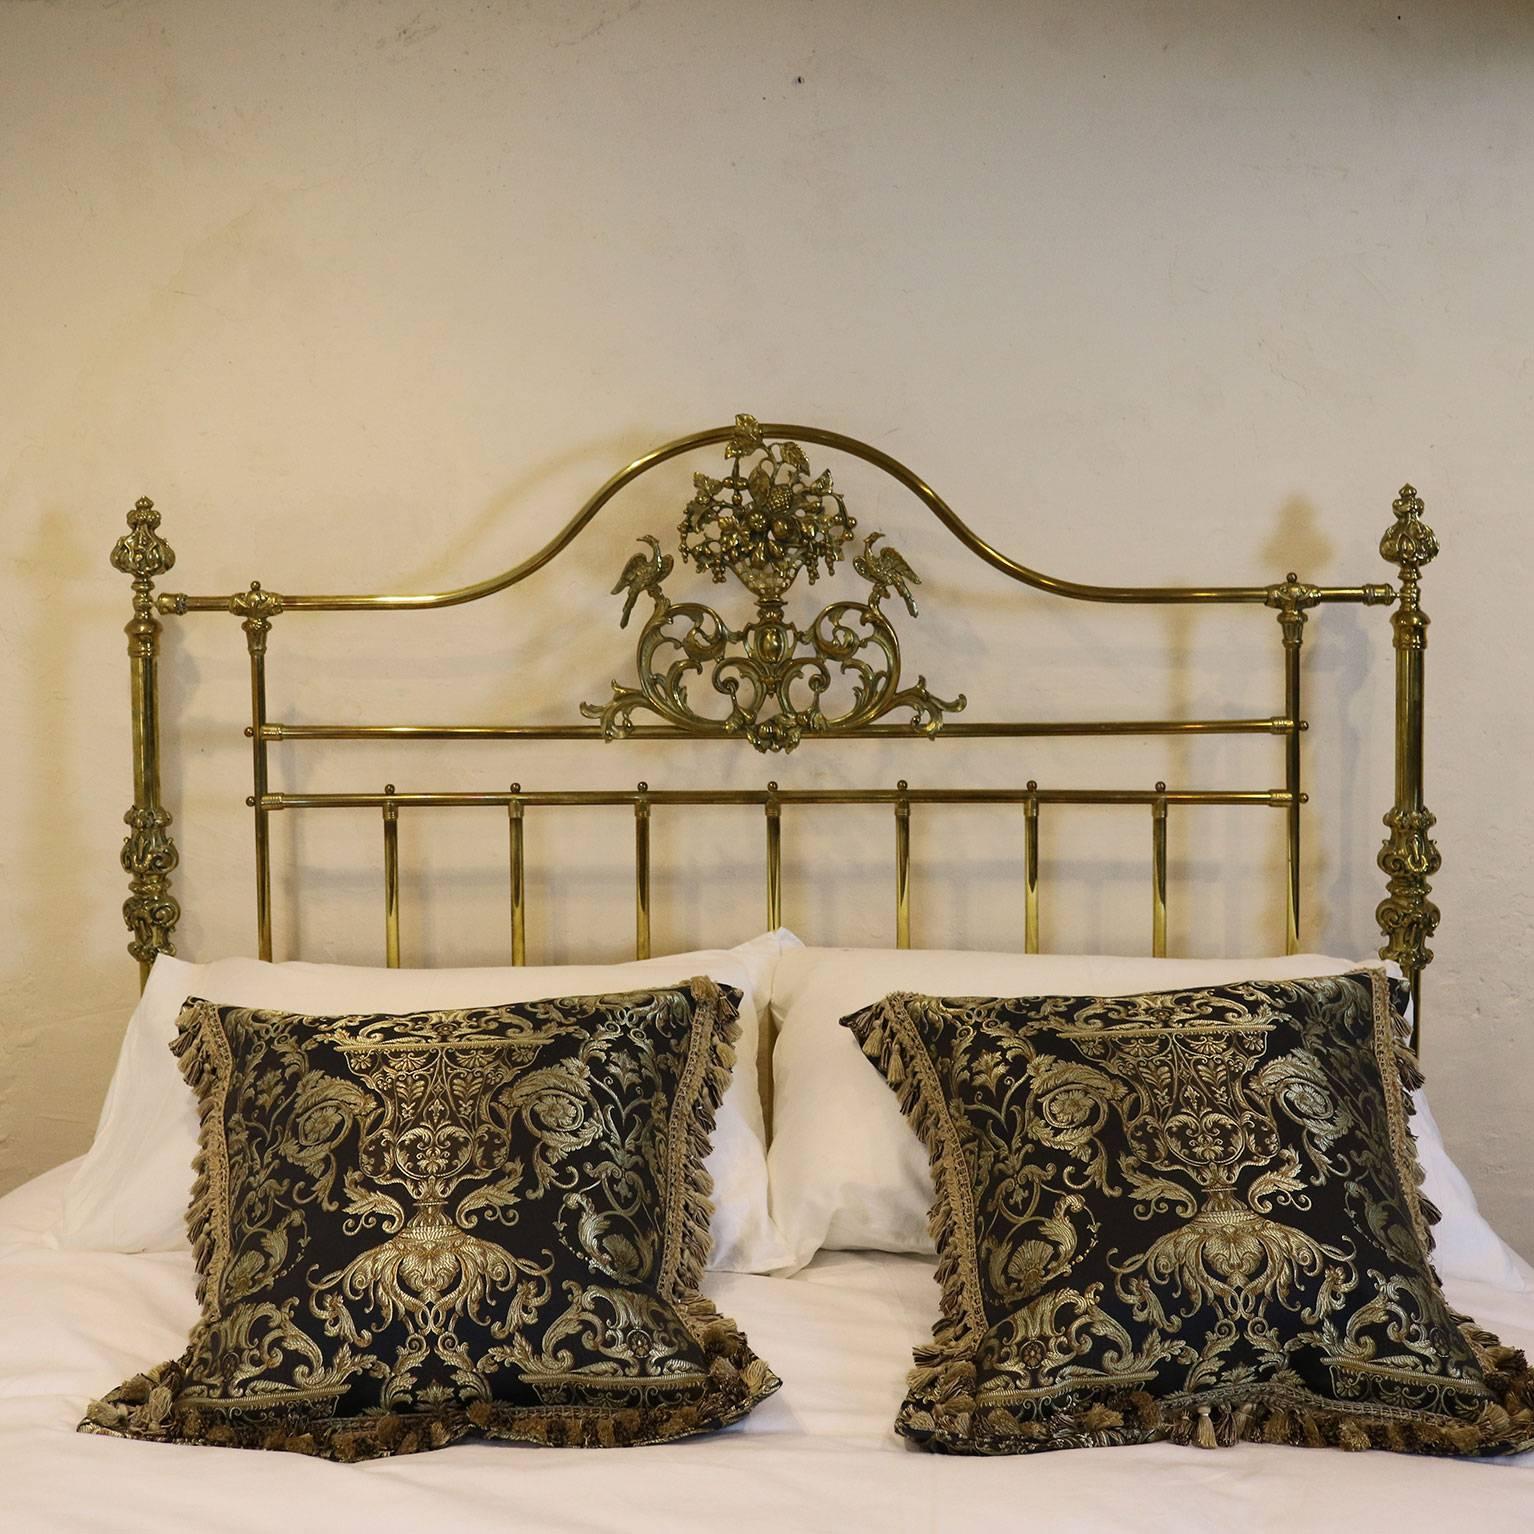 Ornate Brass Bed MK109 1